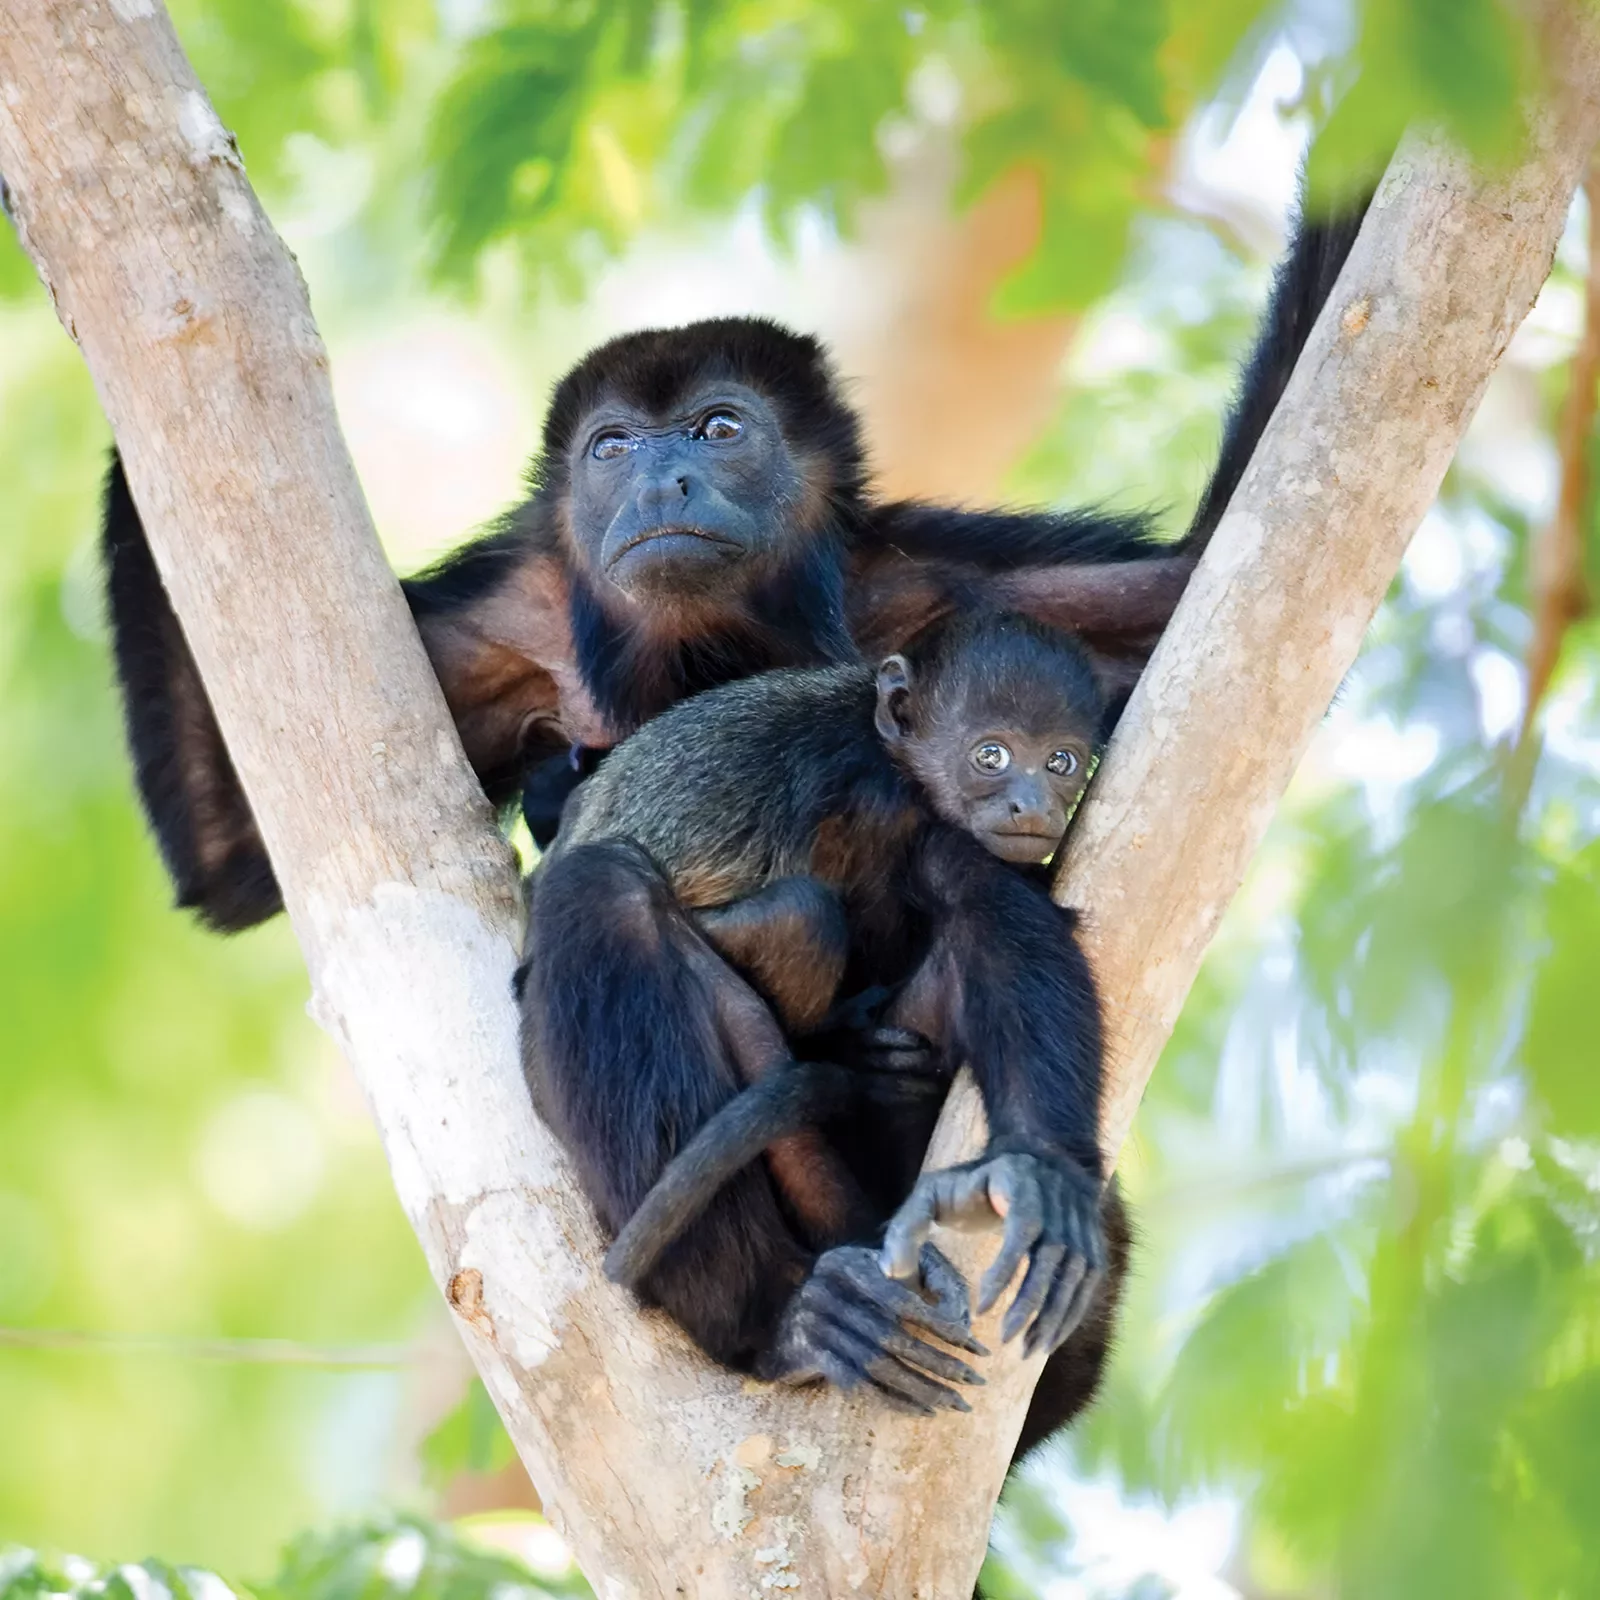 Monkeys in Tree Costa Rica